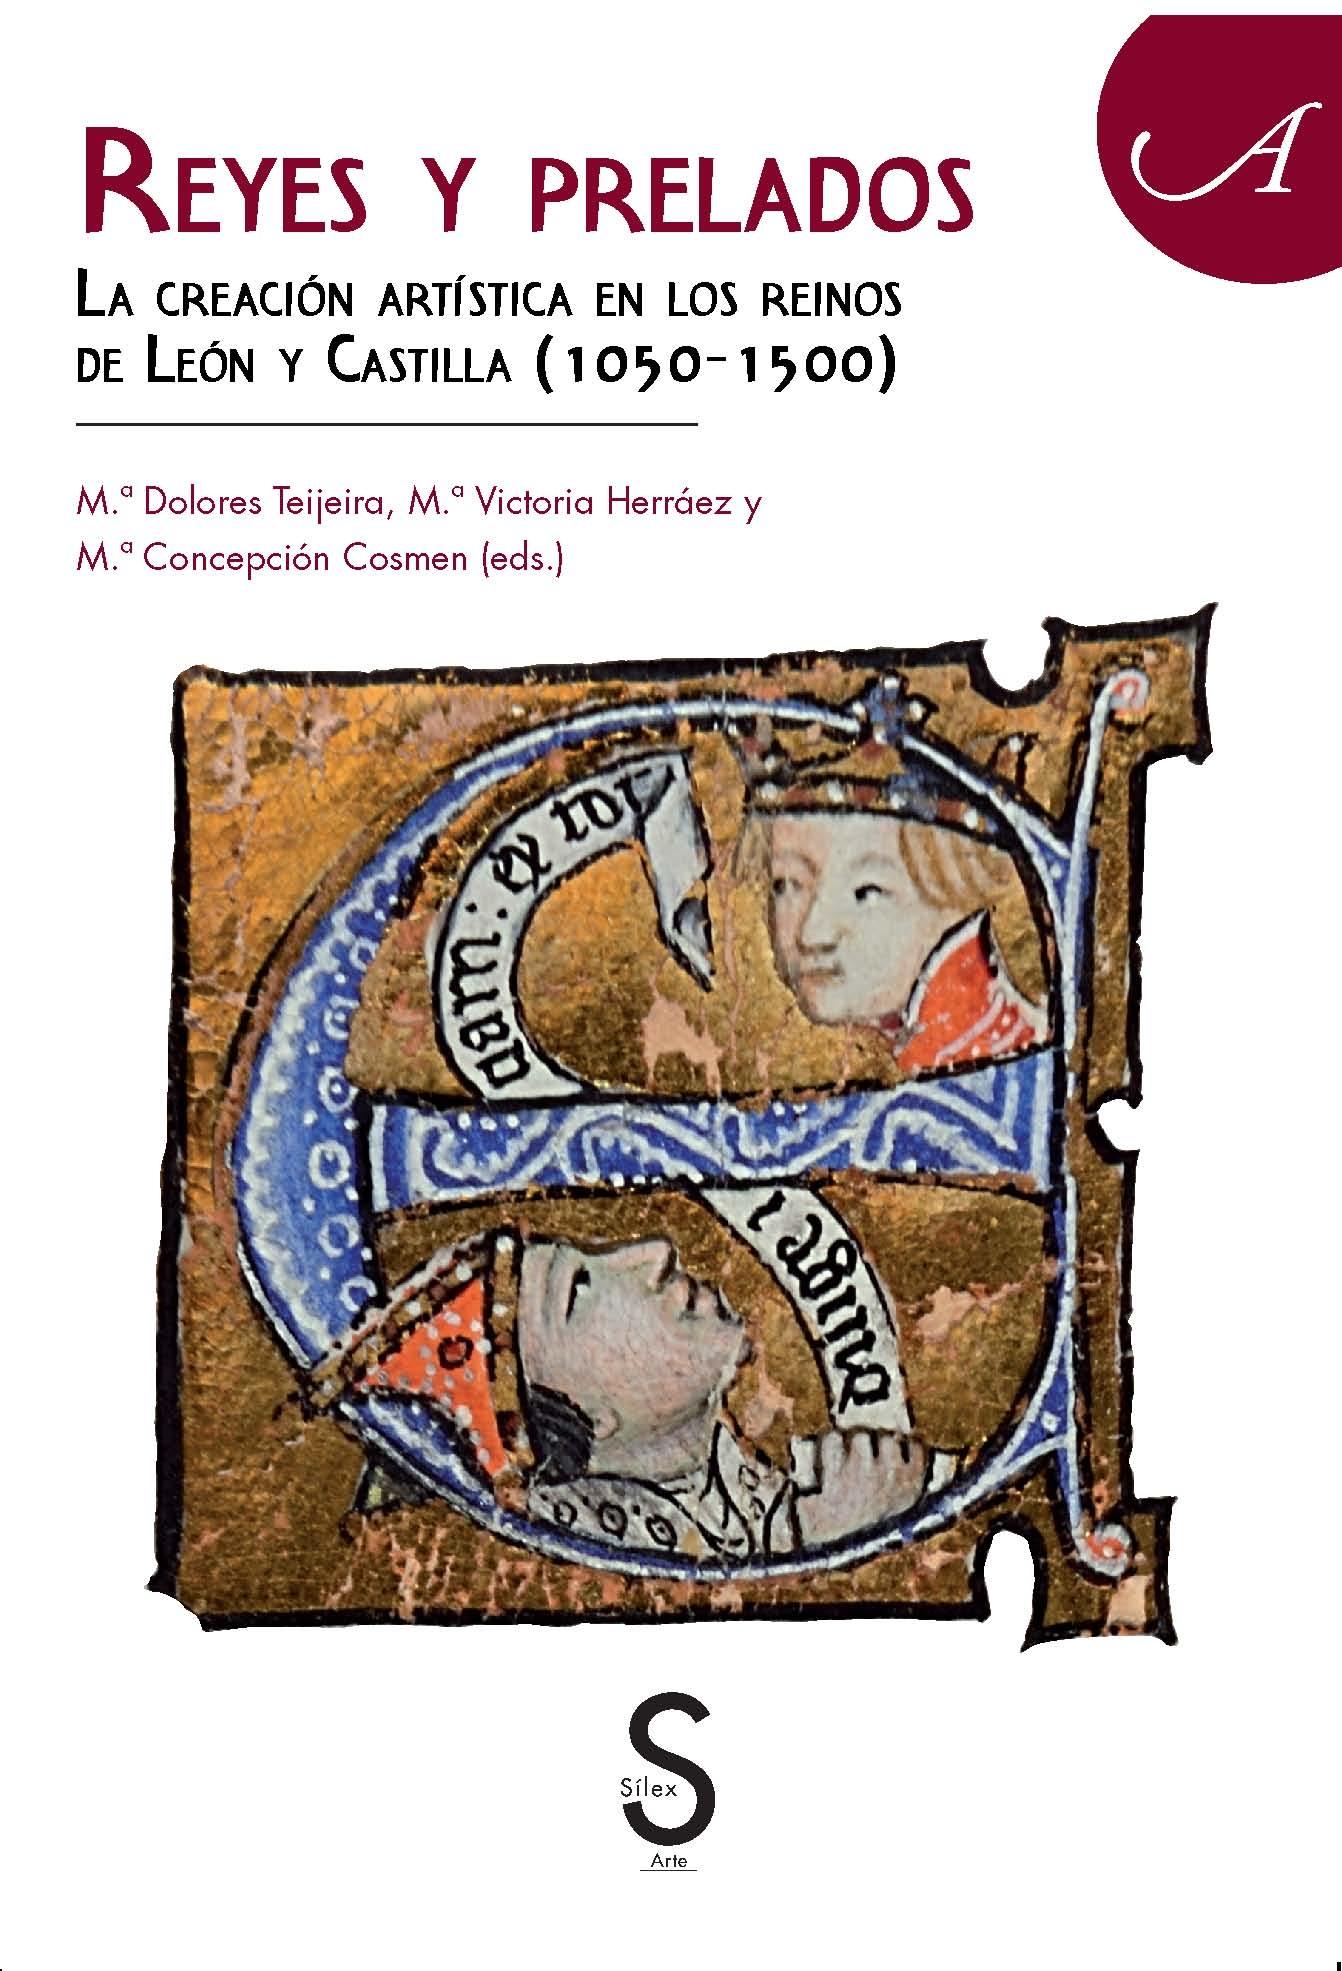 REYES Y PRELADOS "La creación artística en los Reinos de León y Castilla (1050-1500)"